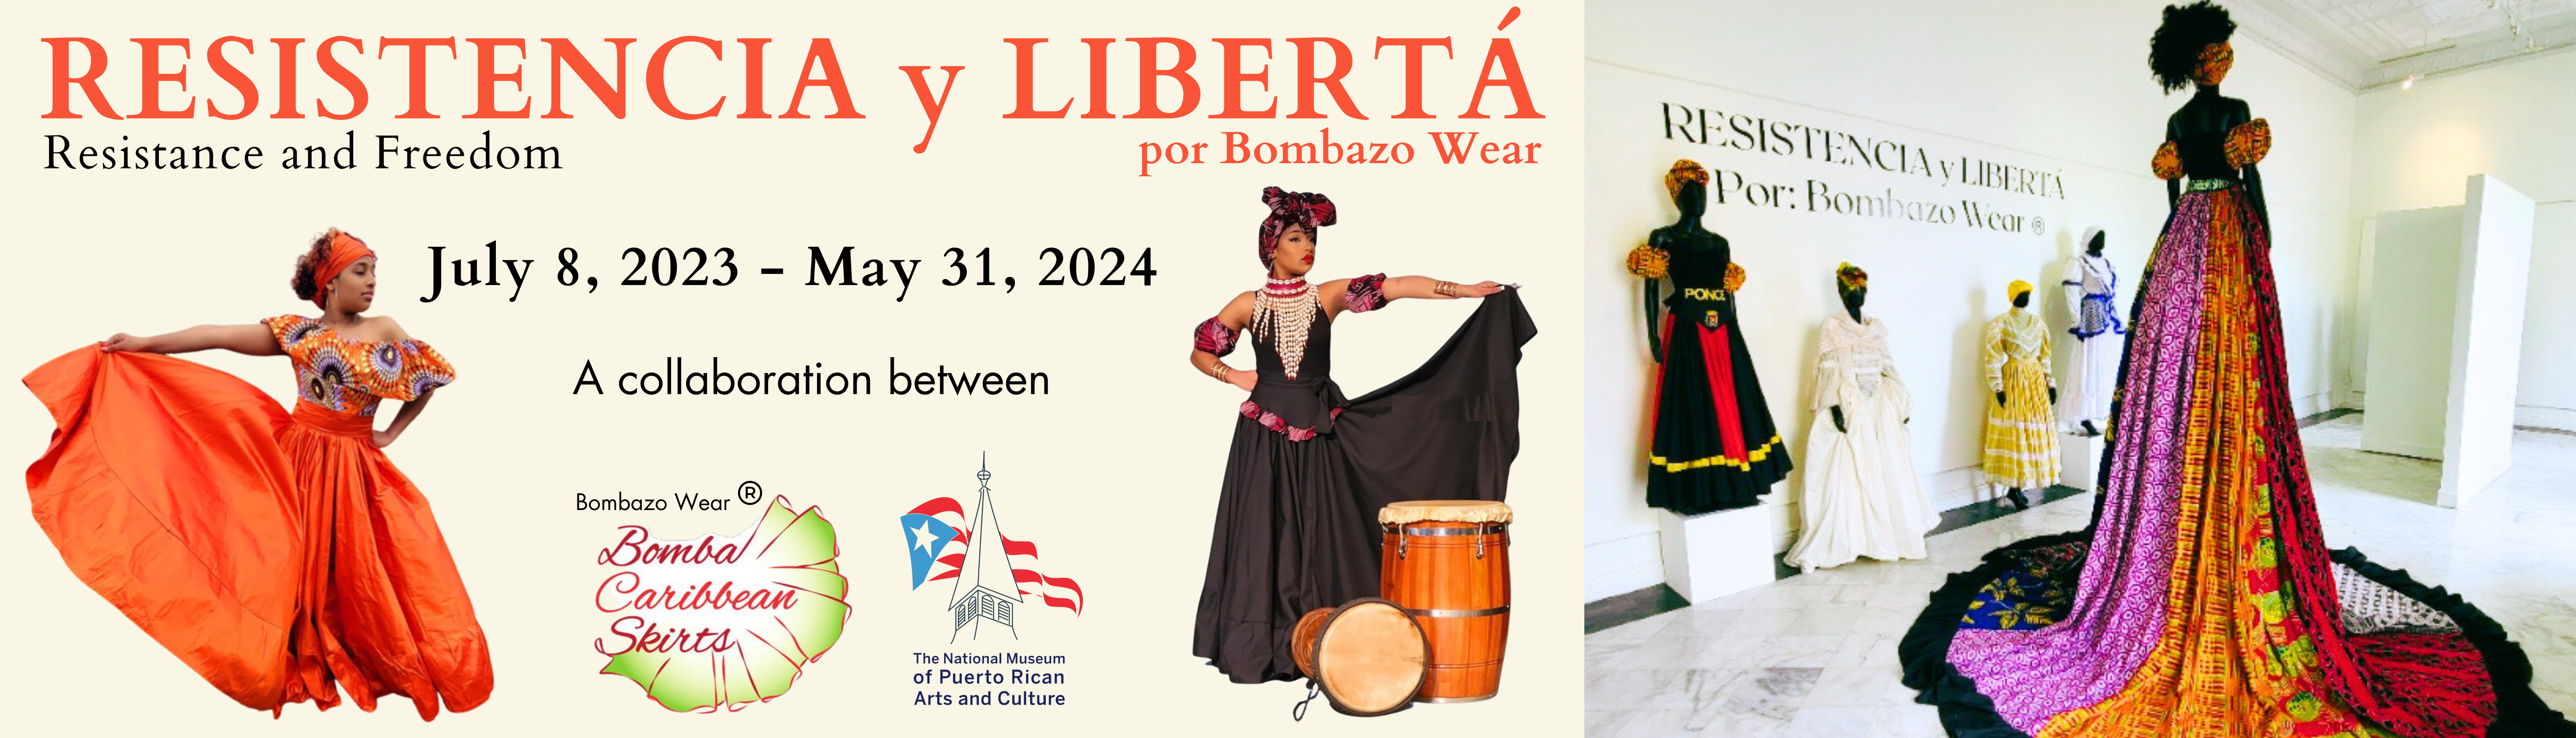 _Resistencia y Liberta por Bombazo Wear (1920 × 550 px) (2)